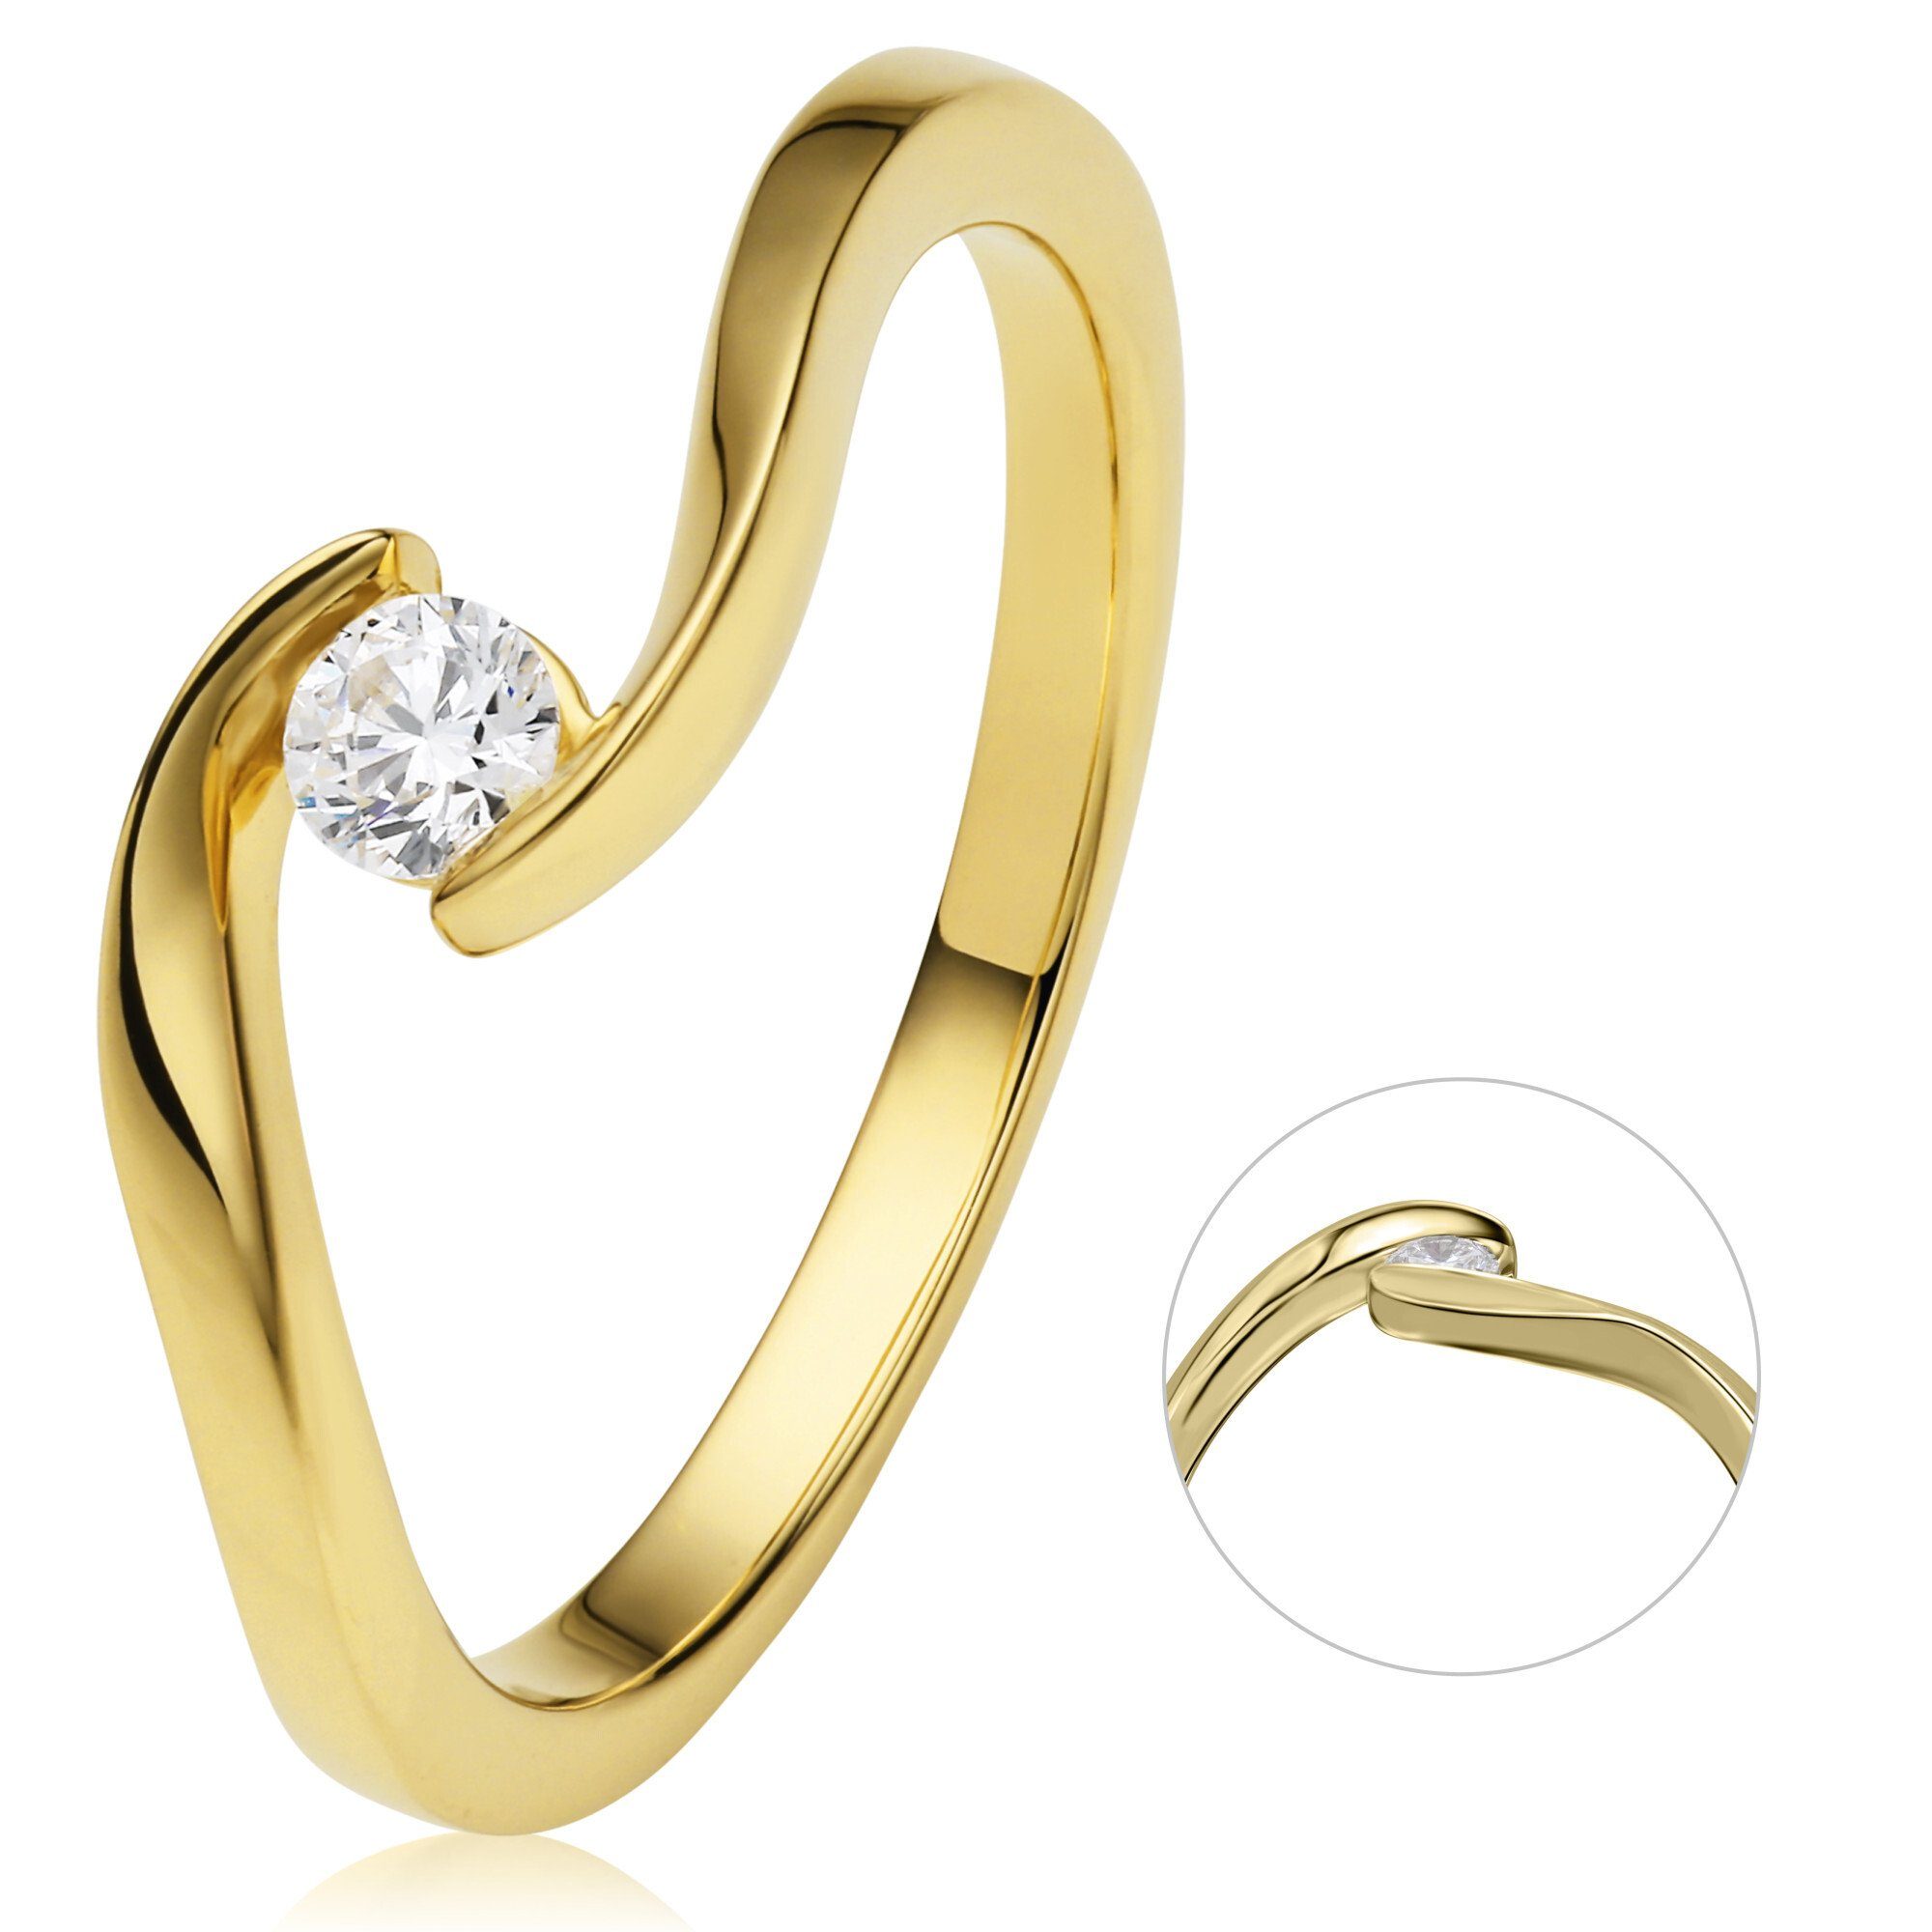 ONE ELEMENT Diamantring 0,15 ct Diamant Brillant Spannfassung Ring aus 750 Gelbgold, Damen Gold Schmuck Spannfassung